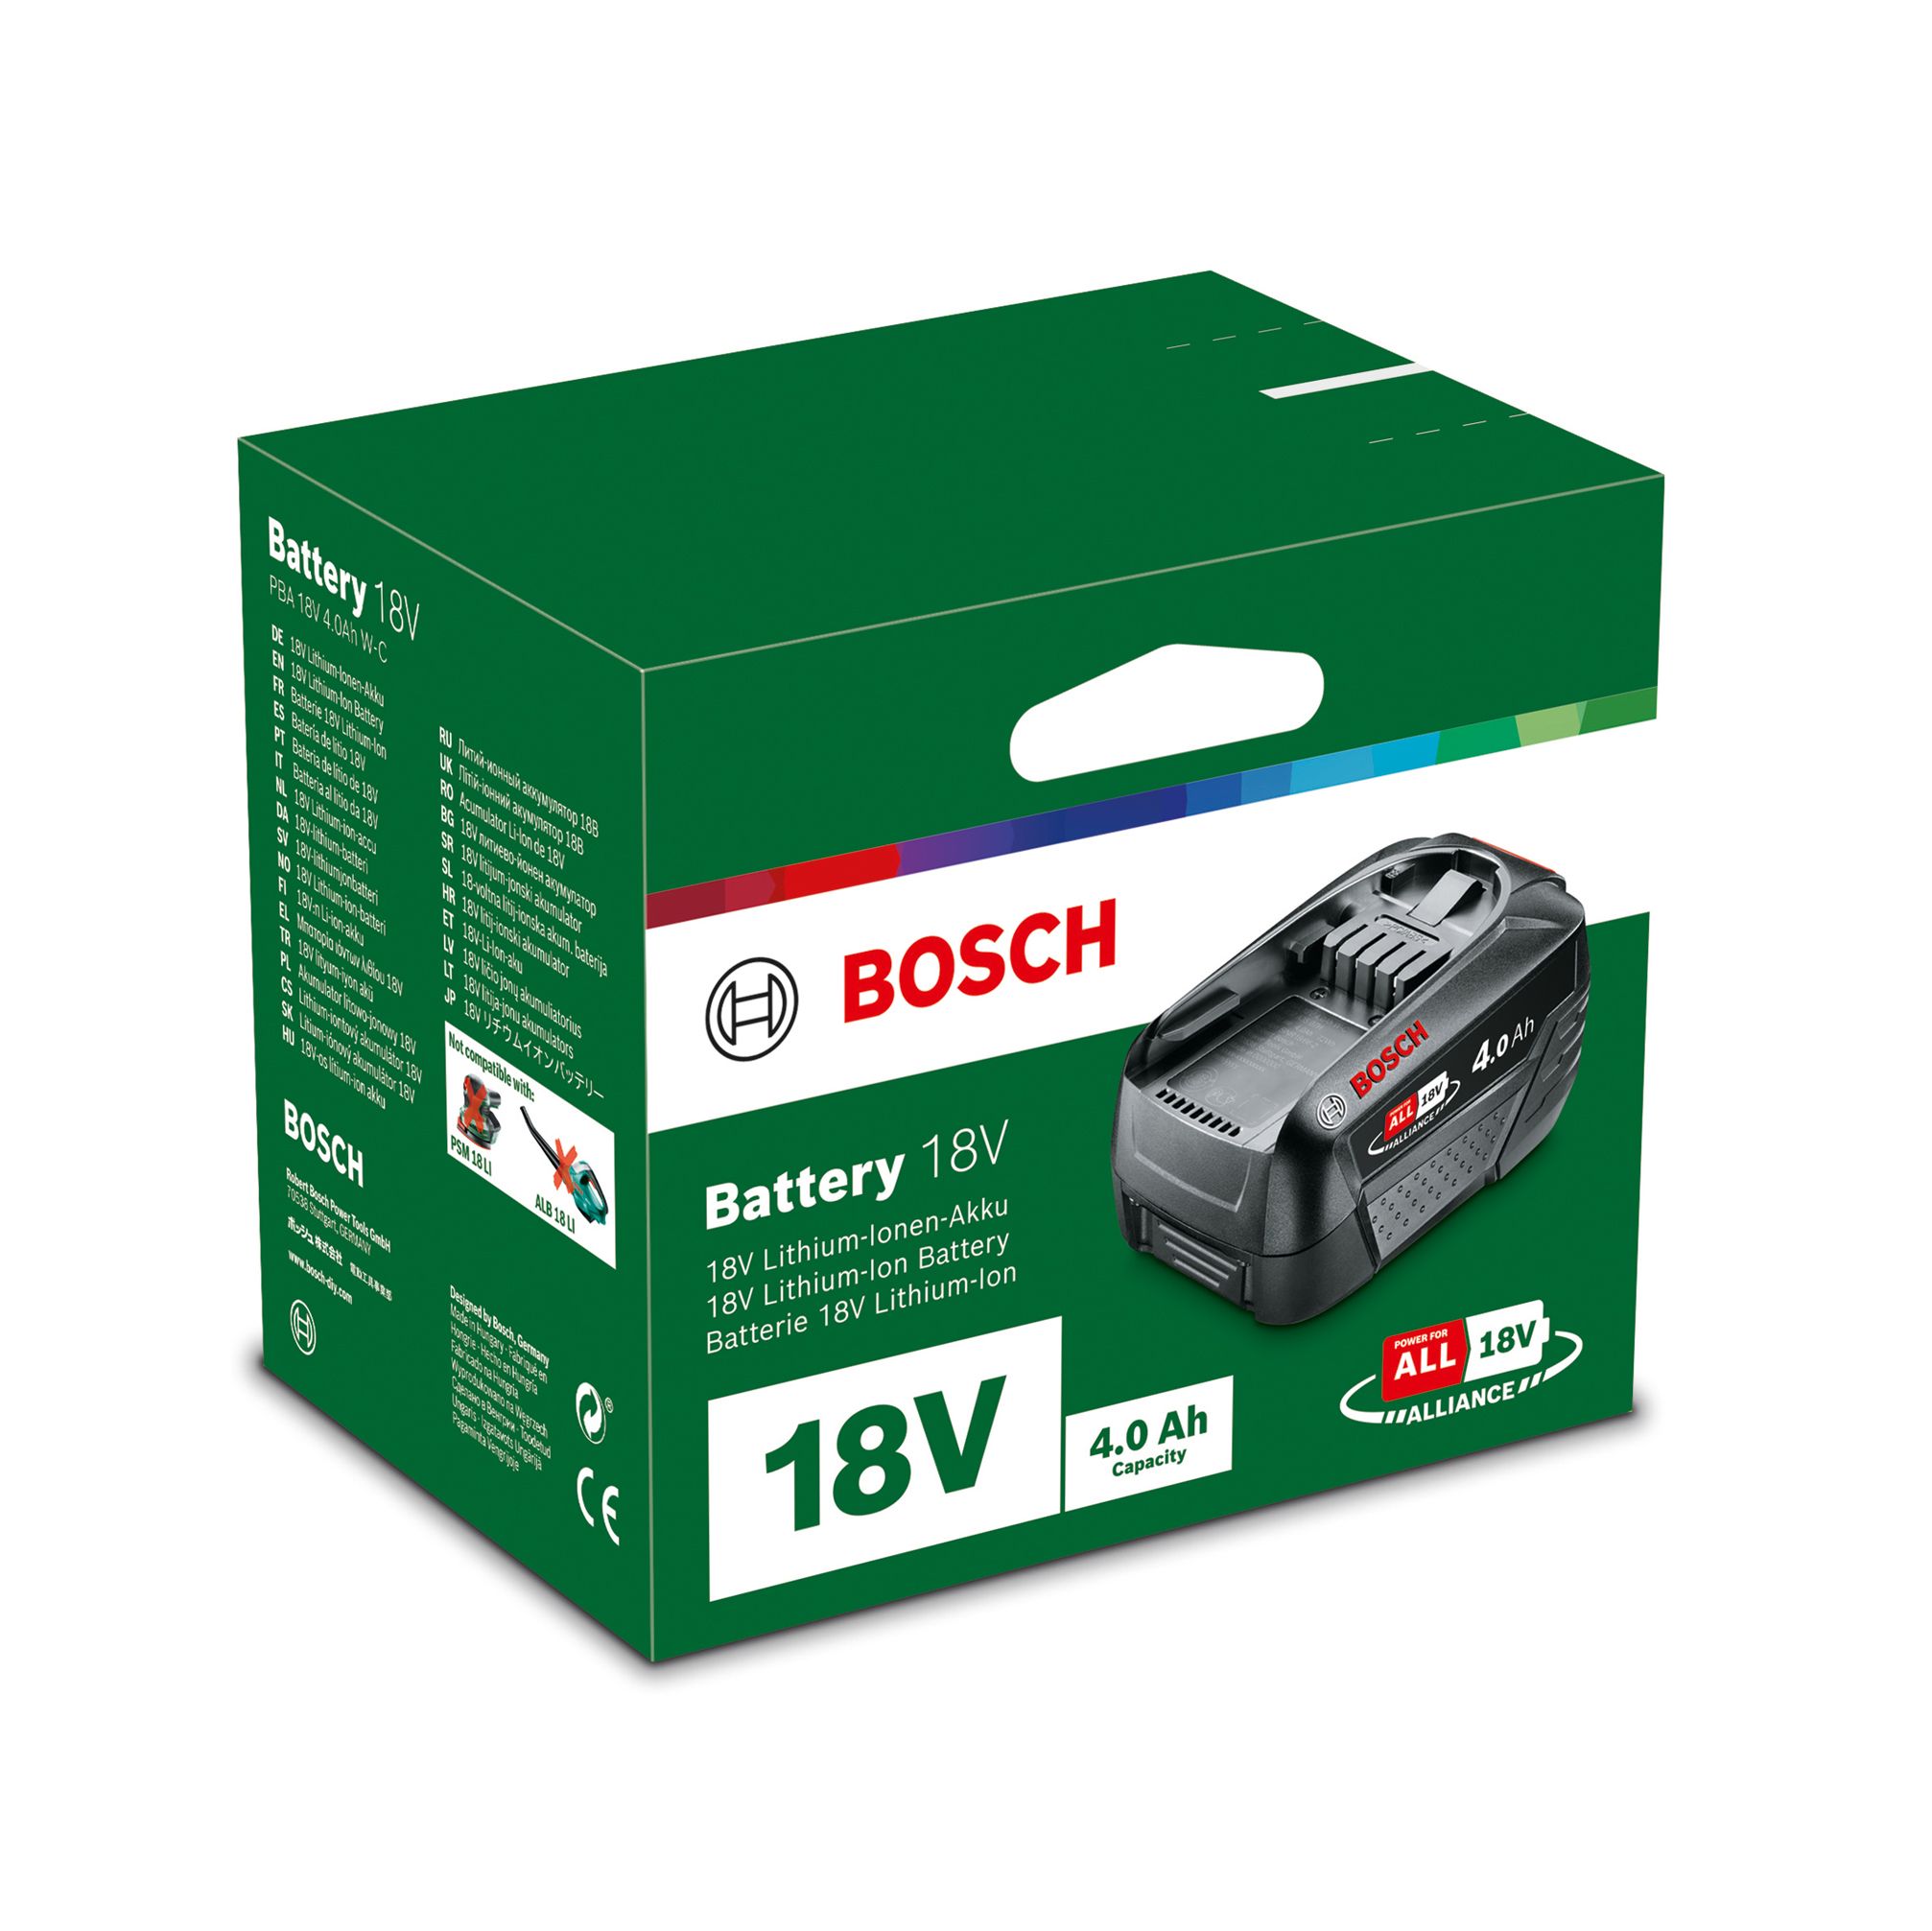 Bosch Power for all 18V 4Ah Li-ion Power tool battery - PBA 18V 4.0 Ah